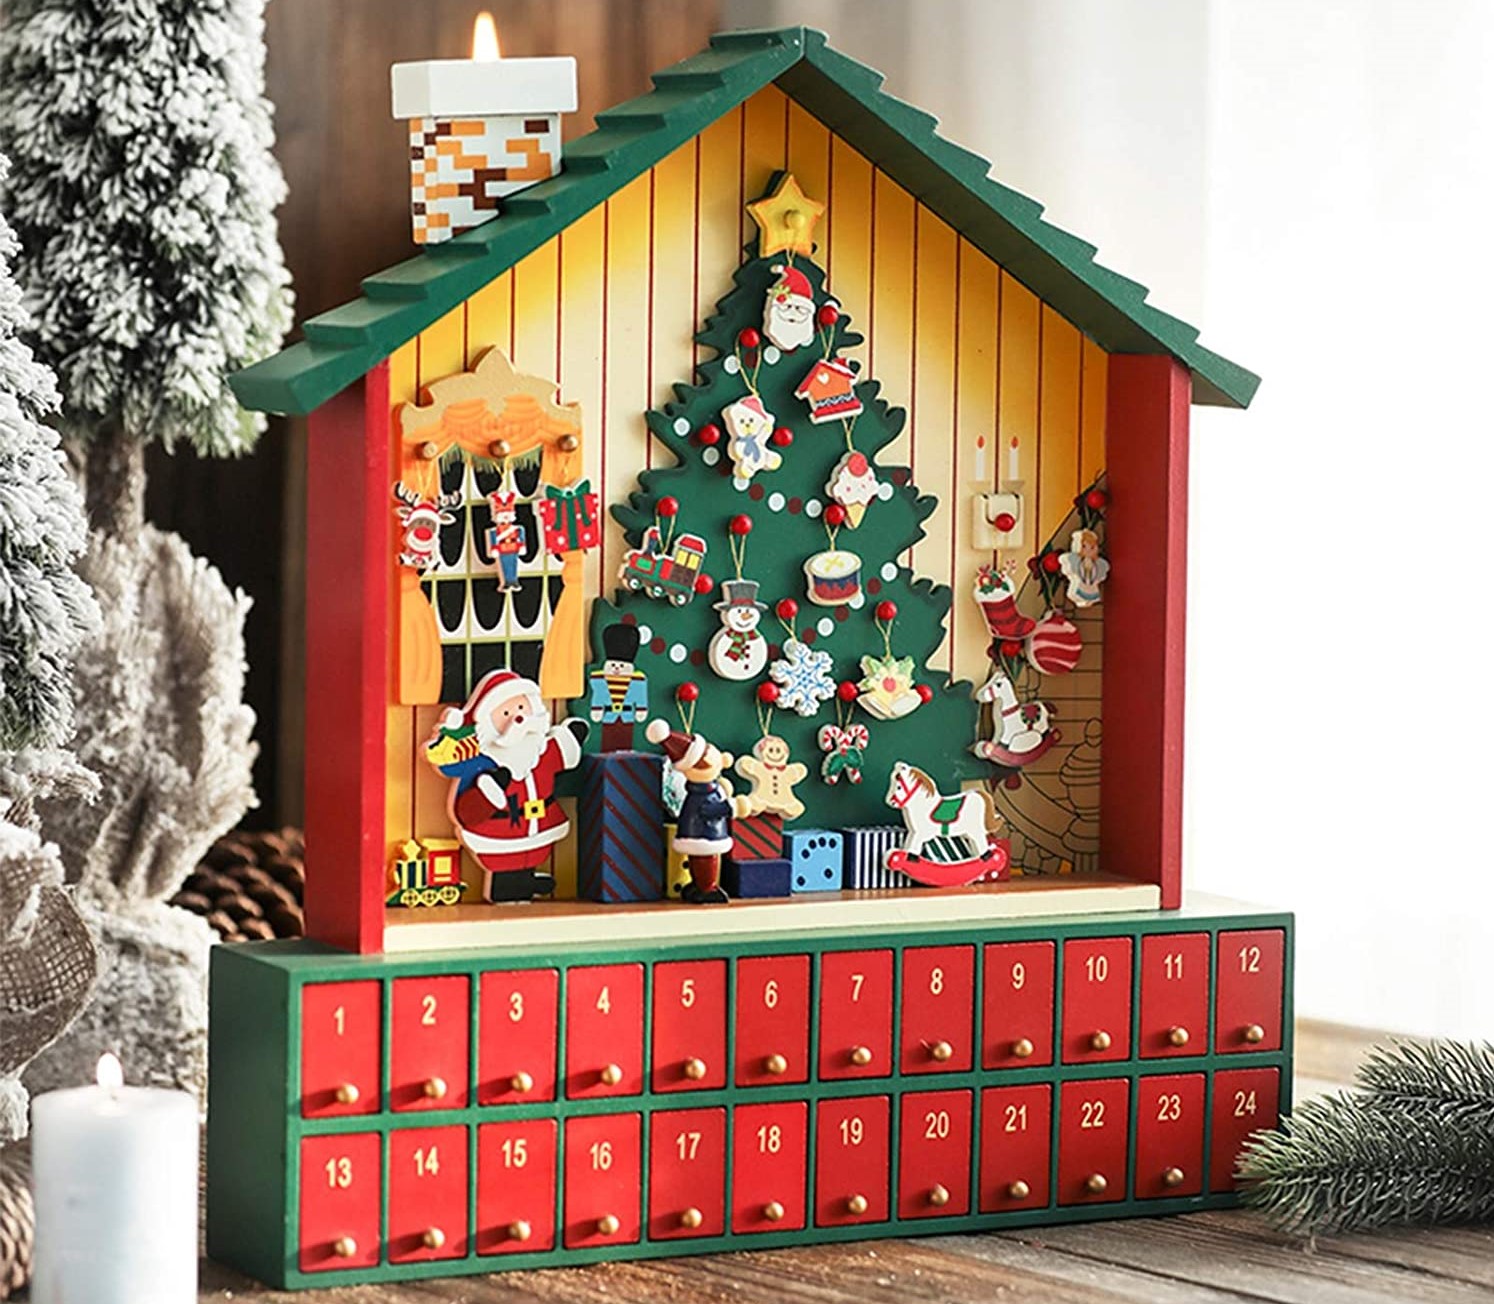 BAKAJI Calendario de Adviento de Navidad de Madera con 24 cajones numerados para Sorpresa decoración Hogar 